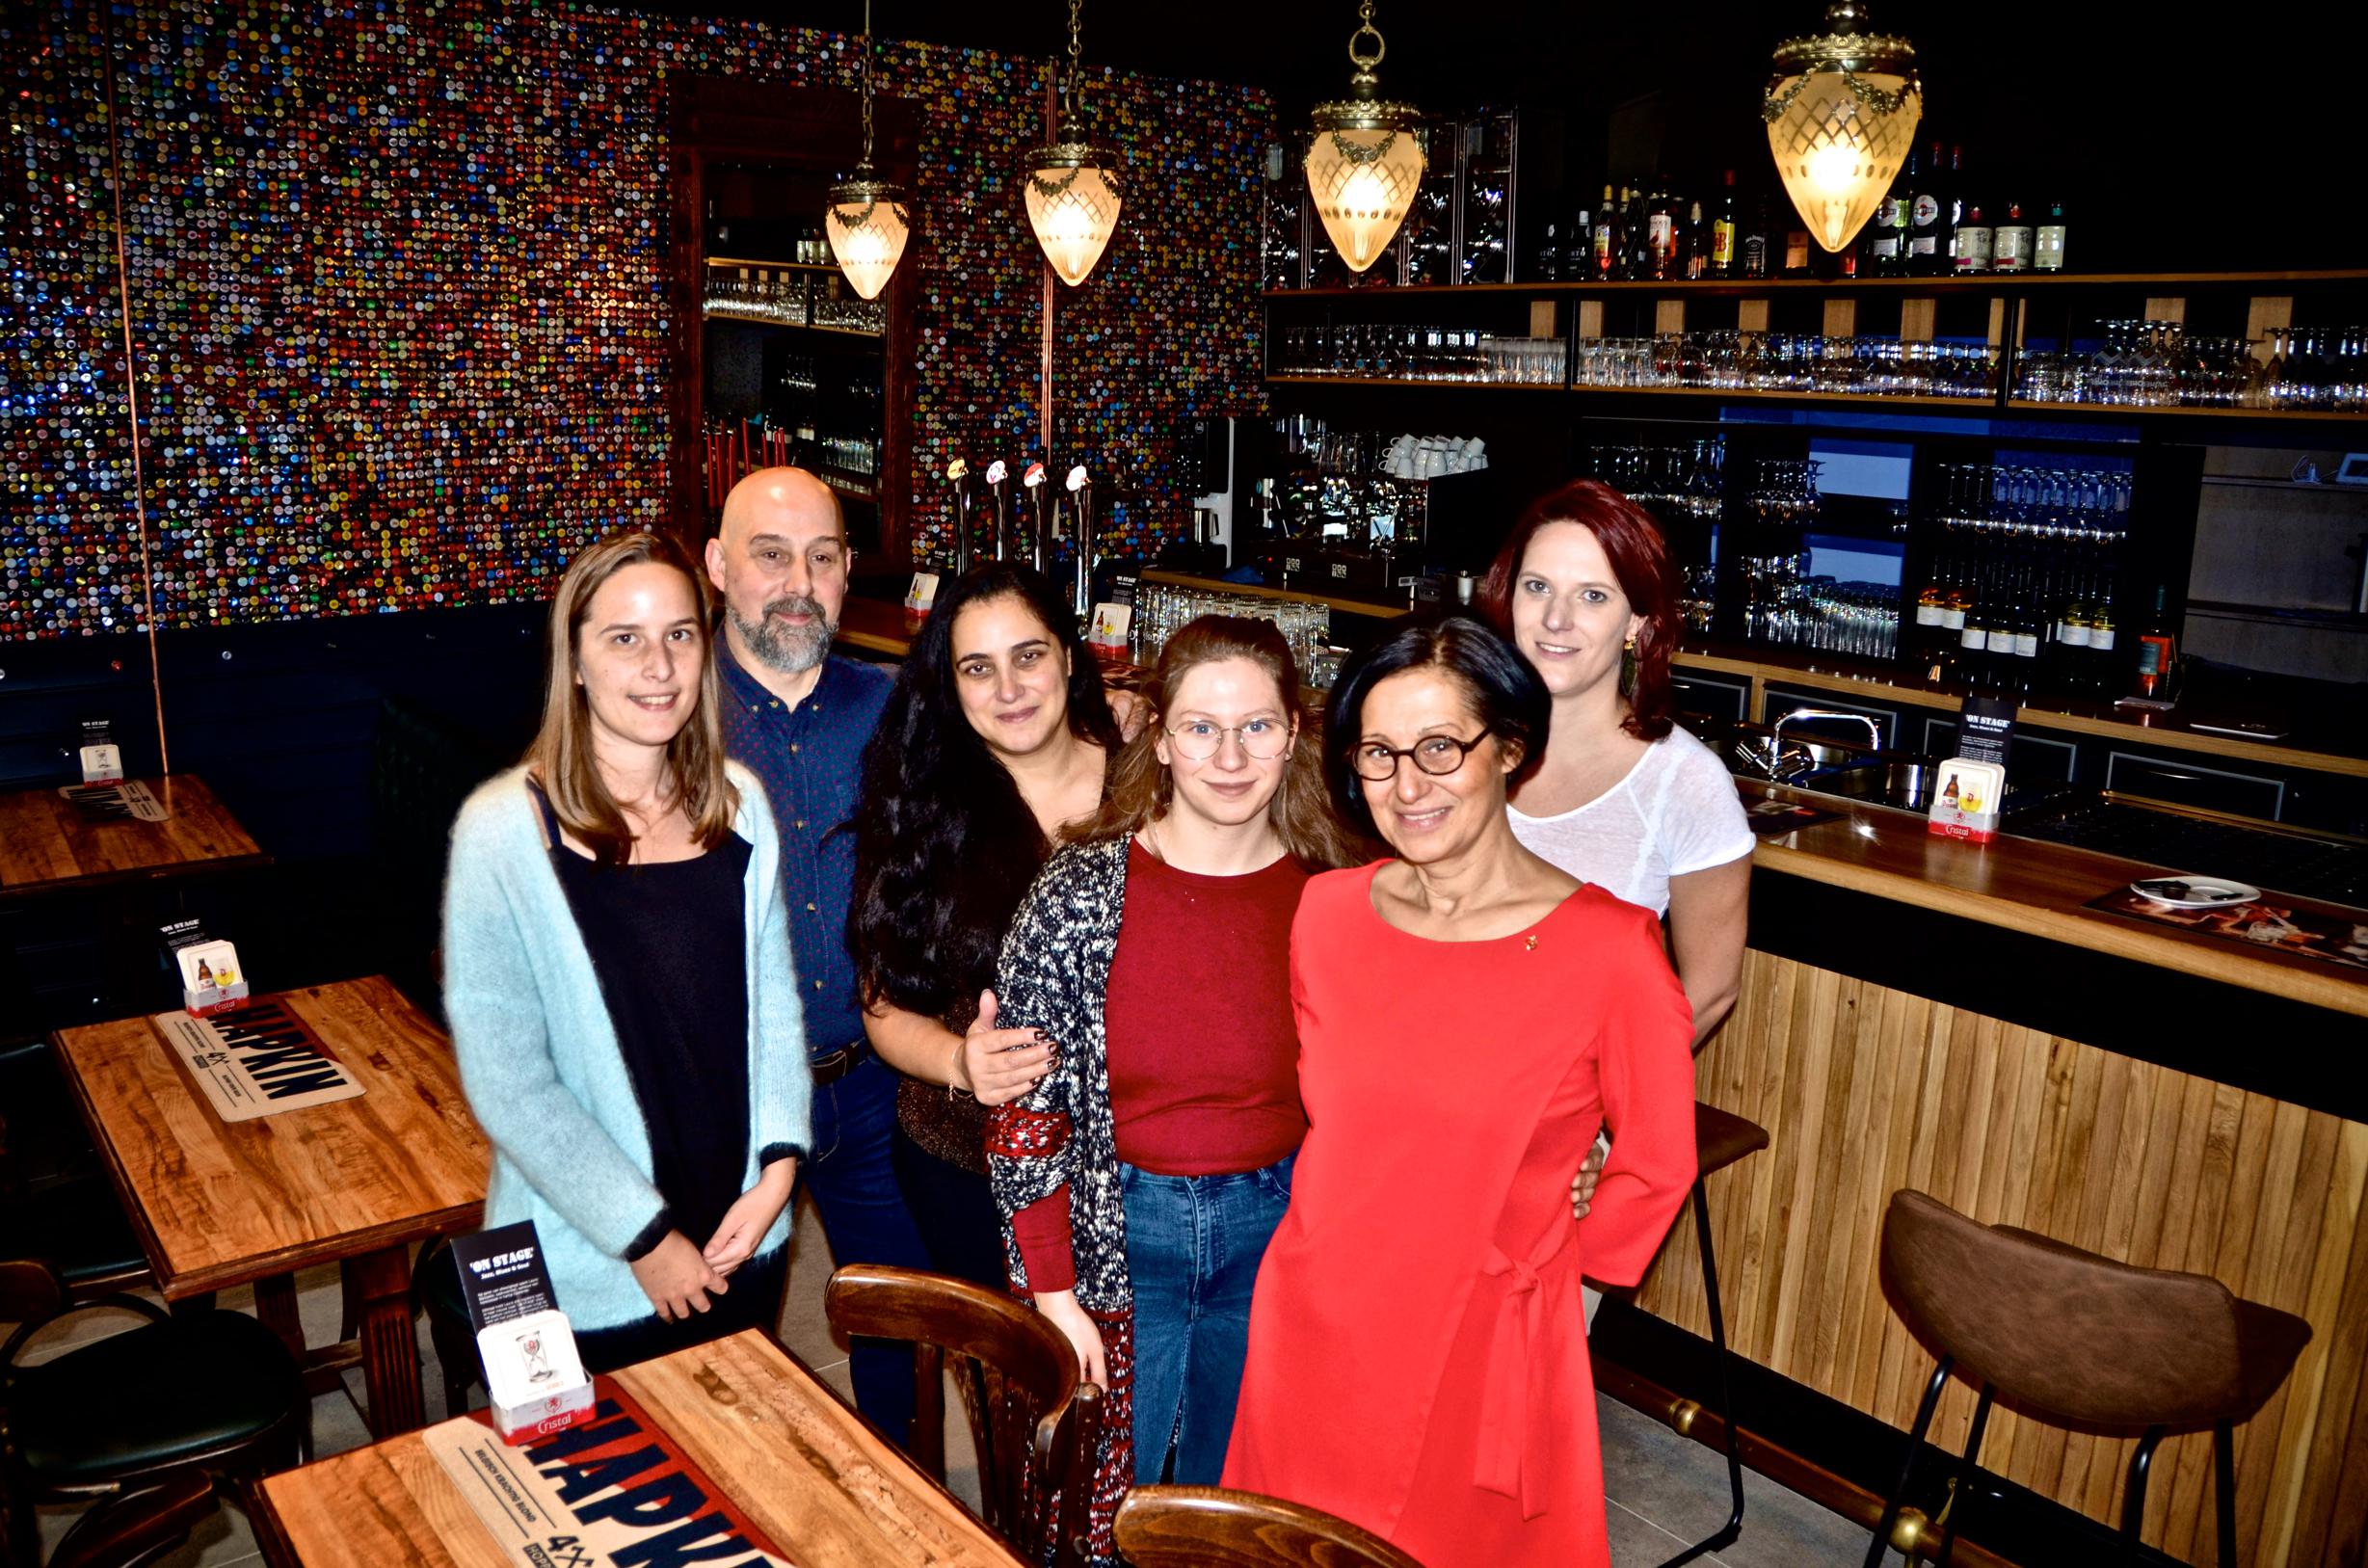 Laura Boccasile opent jazzcafé: “Mijn zaak als living voor iedereen”